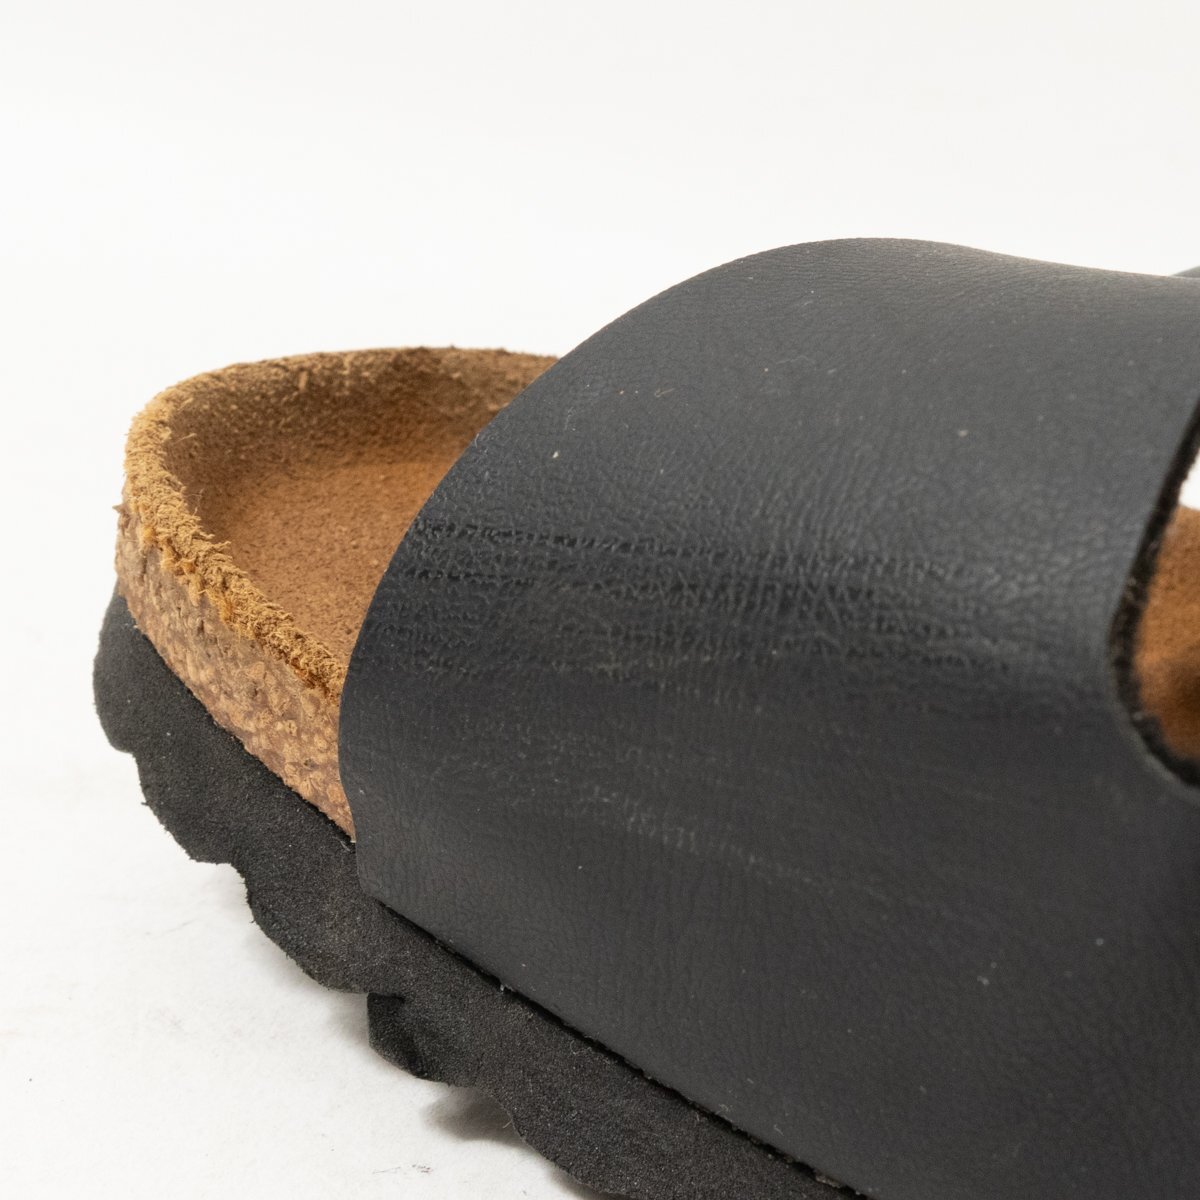 BIRKENSTOCK ビルケンシュトック サンダル ブラック 黒 24cm レザー 本革 レディース ローヒール 靴下コーデ カジュアル 春夏 シューズ 靴の画像9